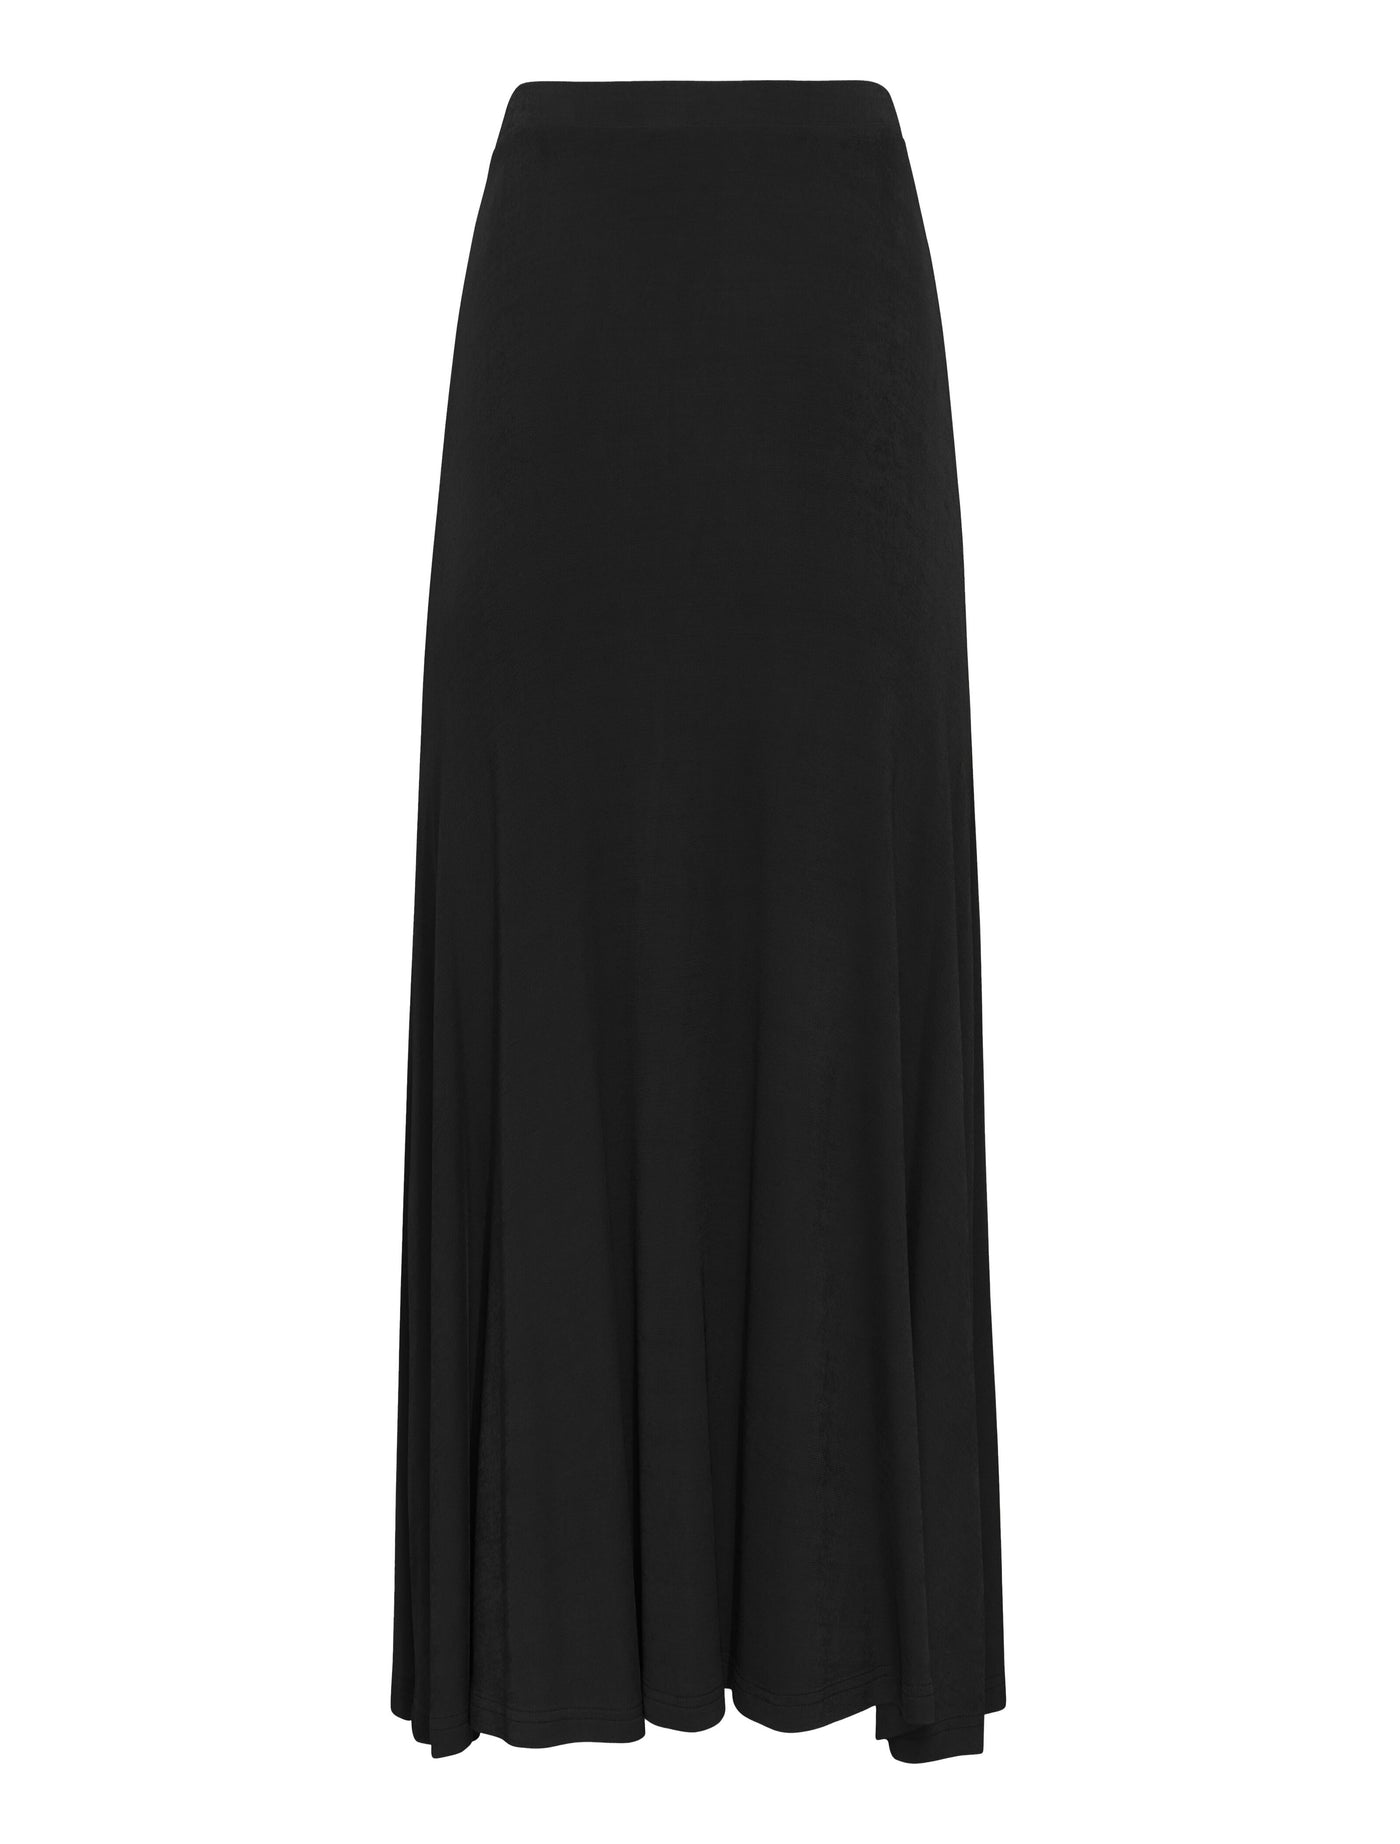 Flute Skirt in Black